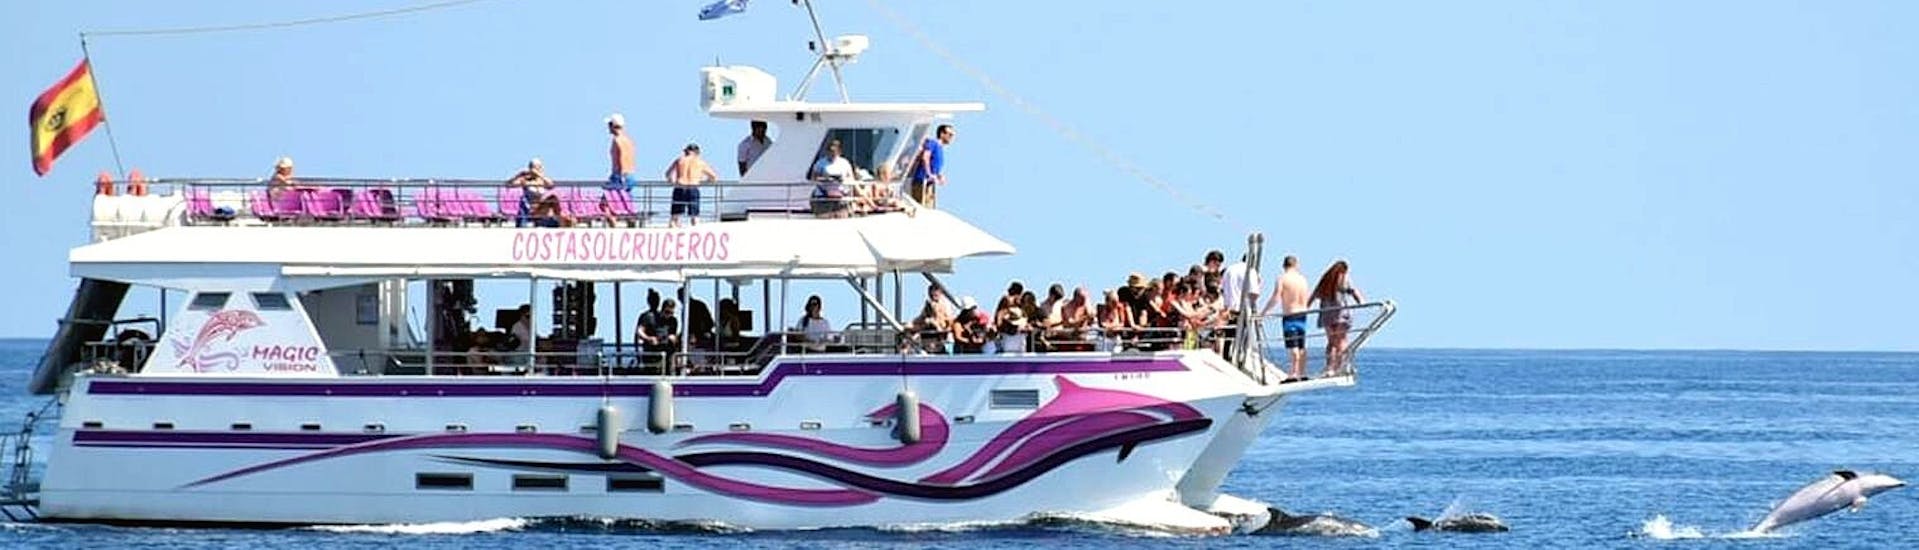 Le catamaran Magic Vision naviguant dans la baie de Benalmadena avec des participants s'amusant à bord, lors d'une excursion en catamaran à Benalmádena avec observation des dauphins avec Costasol Cruceros.